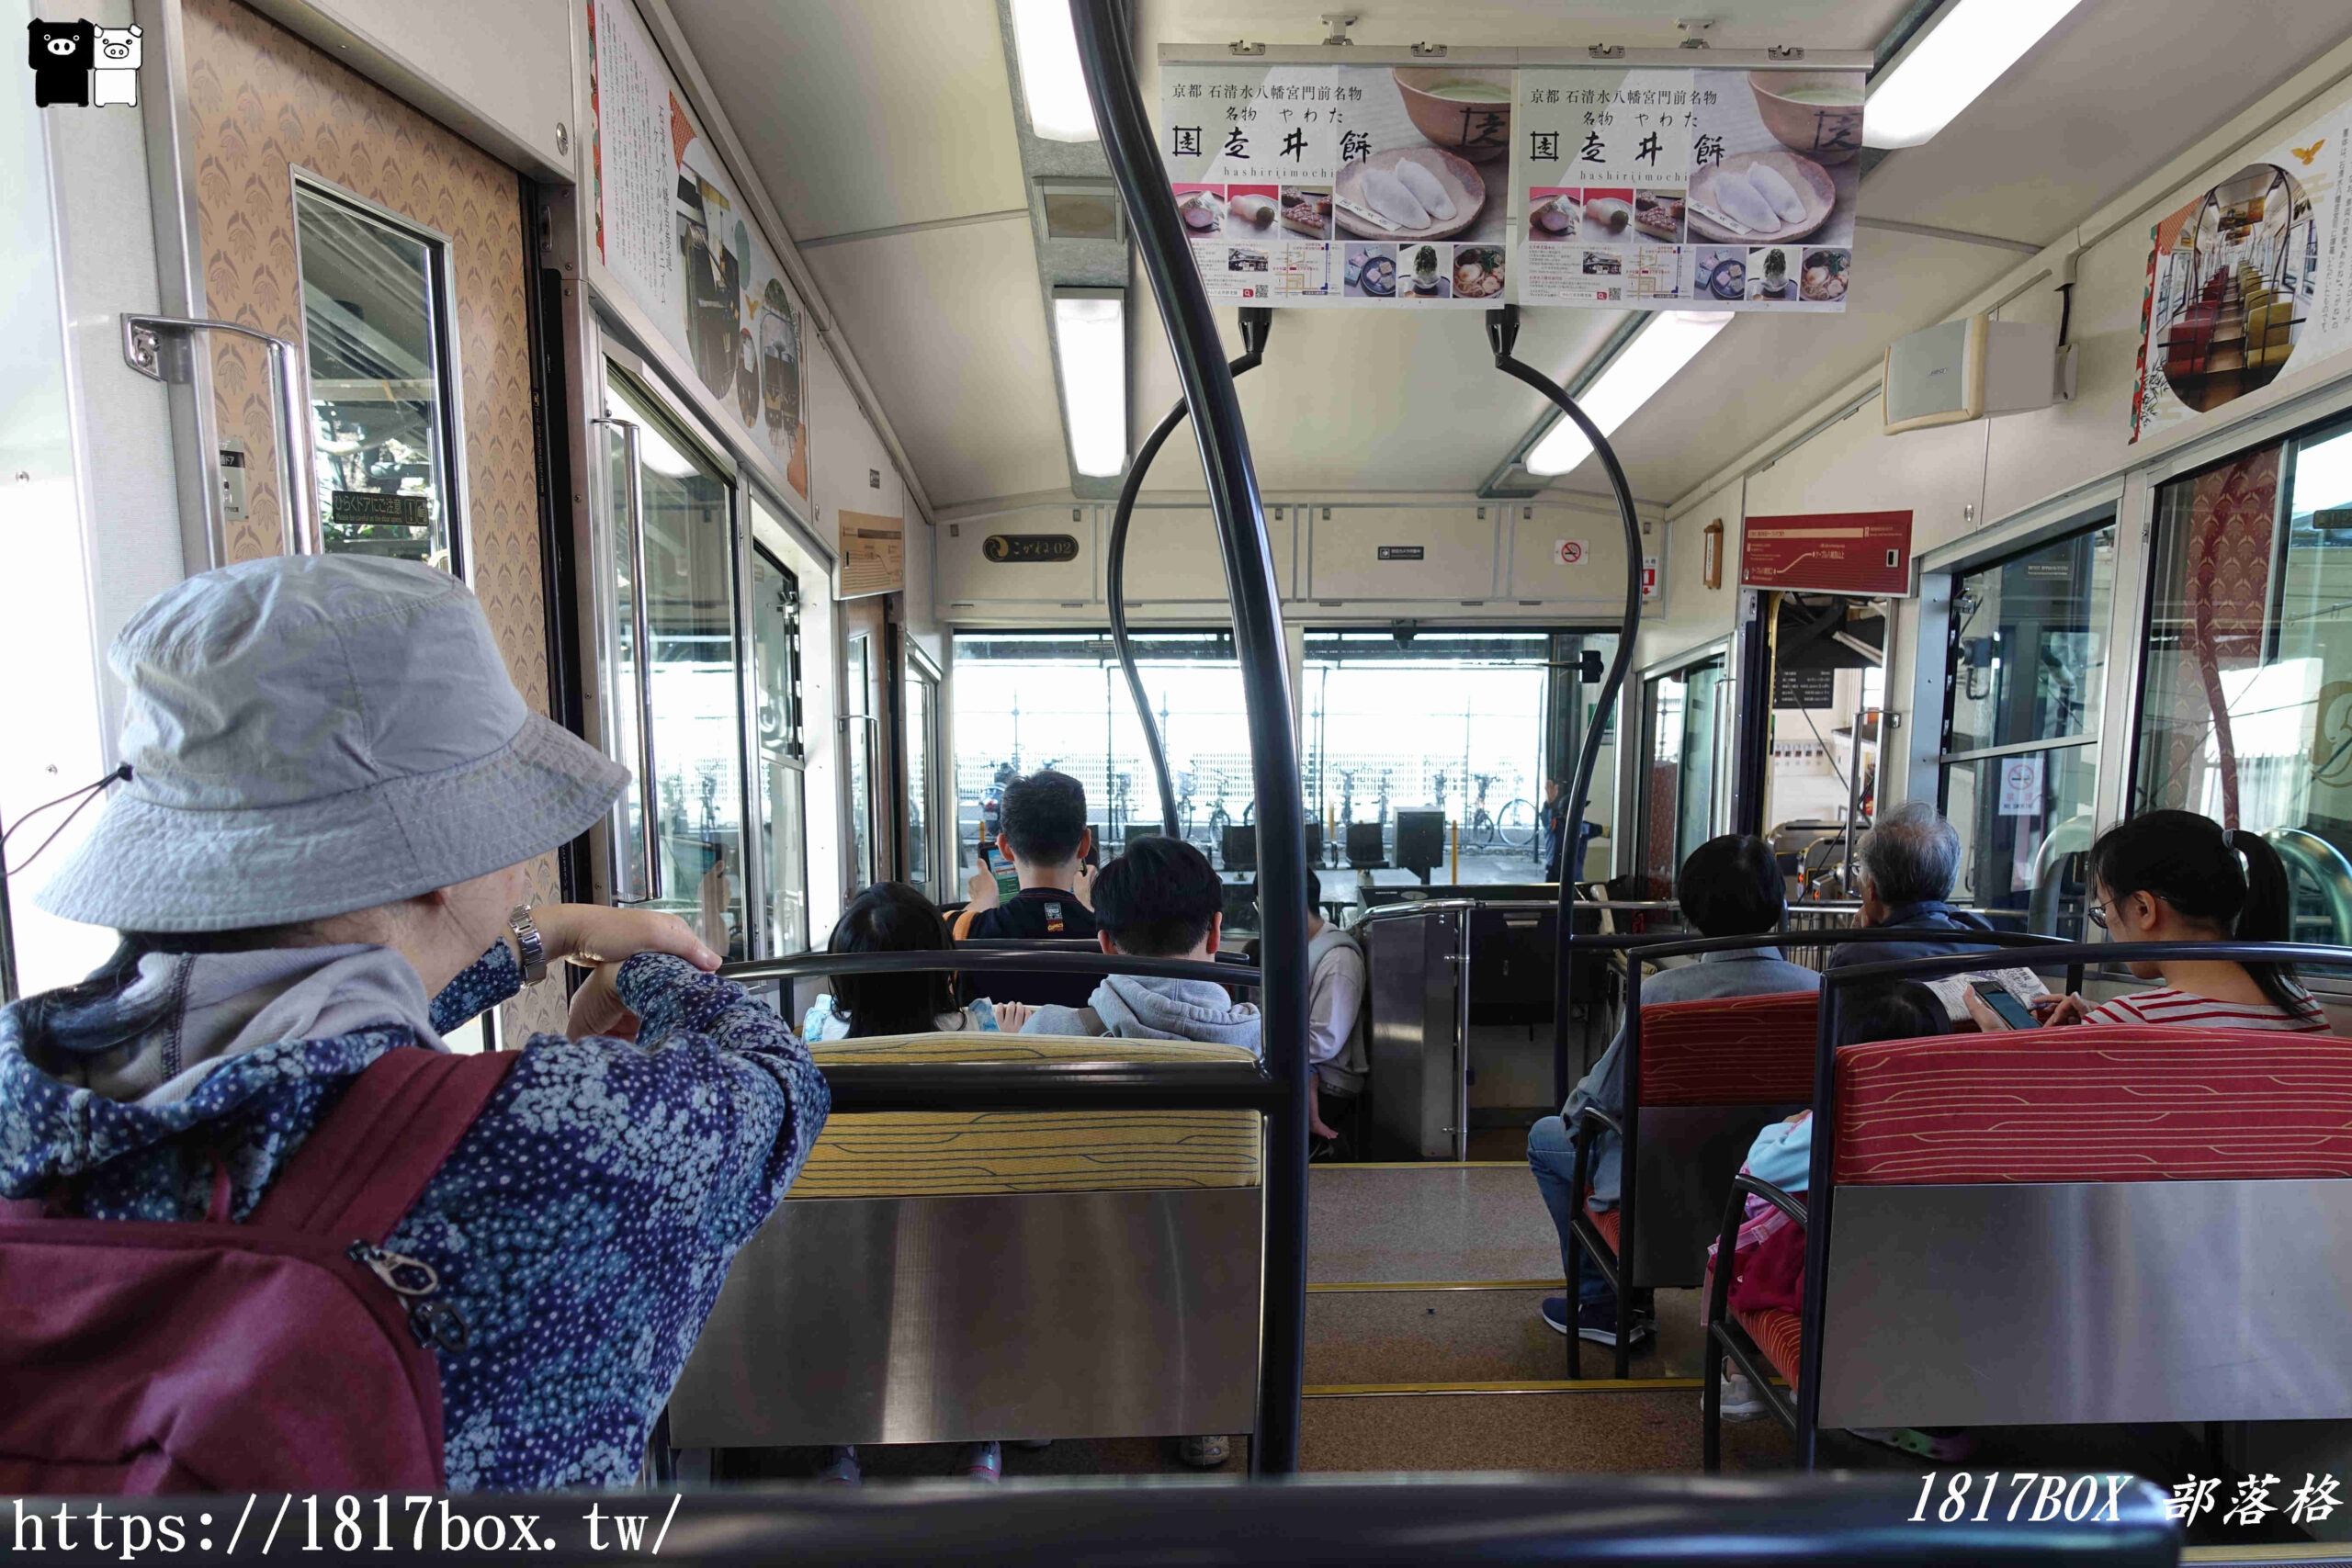 【京都景點】石清水八幡宮參道纜車。從車窗欣賞京都以南景色